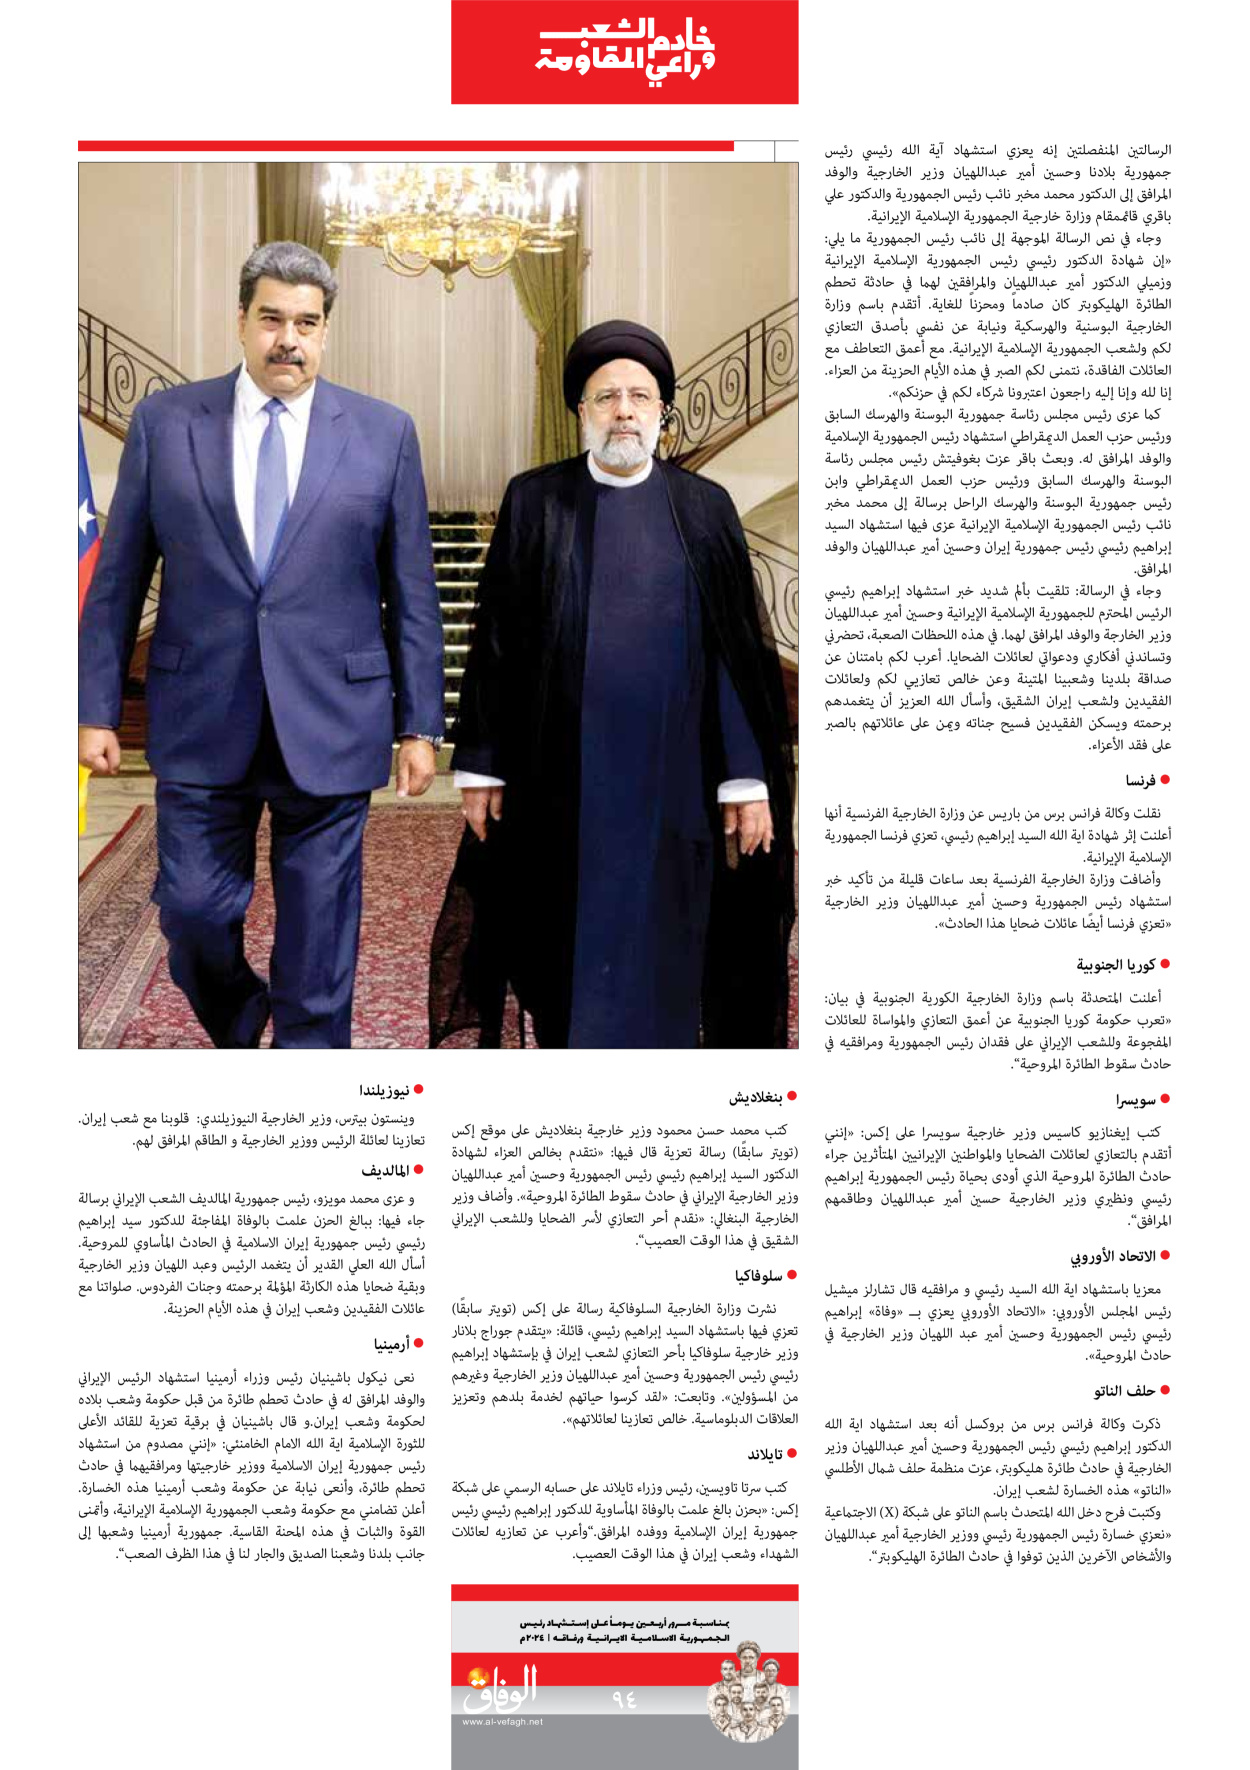 صحیفة ایران الدولیة الوفاق - ملحق ویژه نامه چهلم شهید رییسی - ٢٩ يونيو ٢٠٢٤ - الصفحة ۹۳